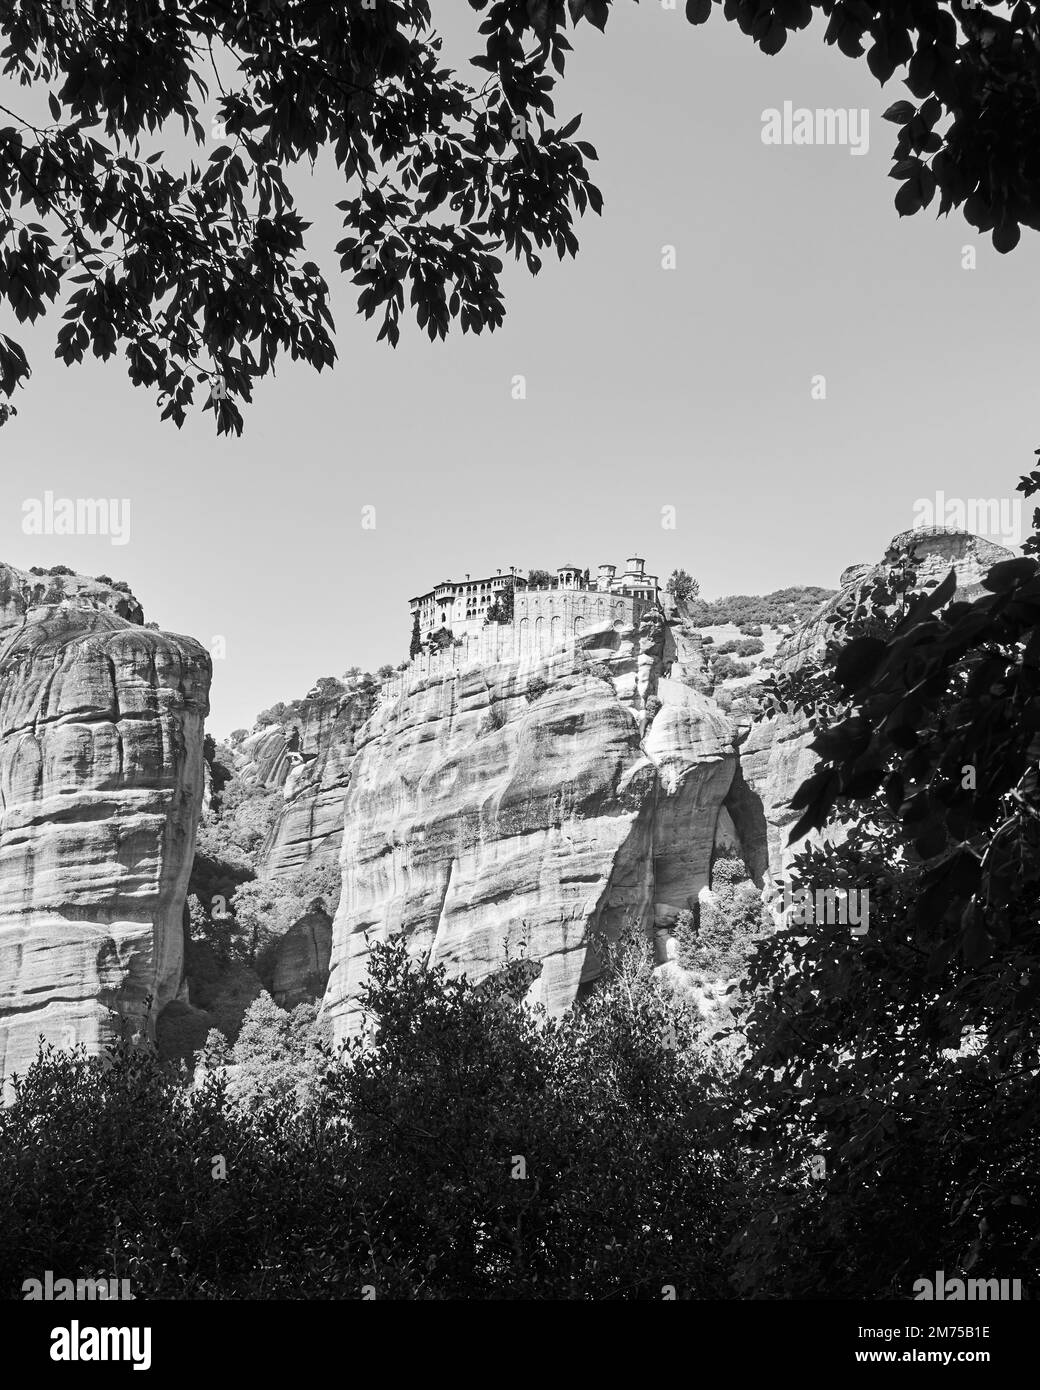 Cloîtres sur les rochers à Meteora, Grèce. Photographie de paysage, noir et blanc Banque D'Images